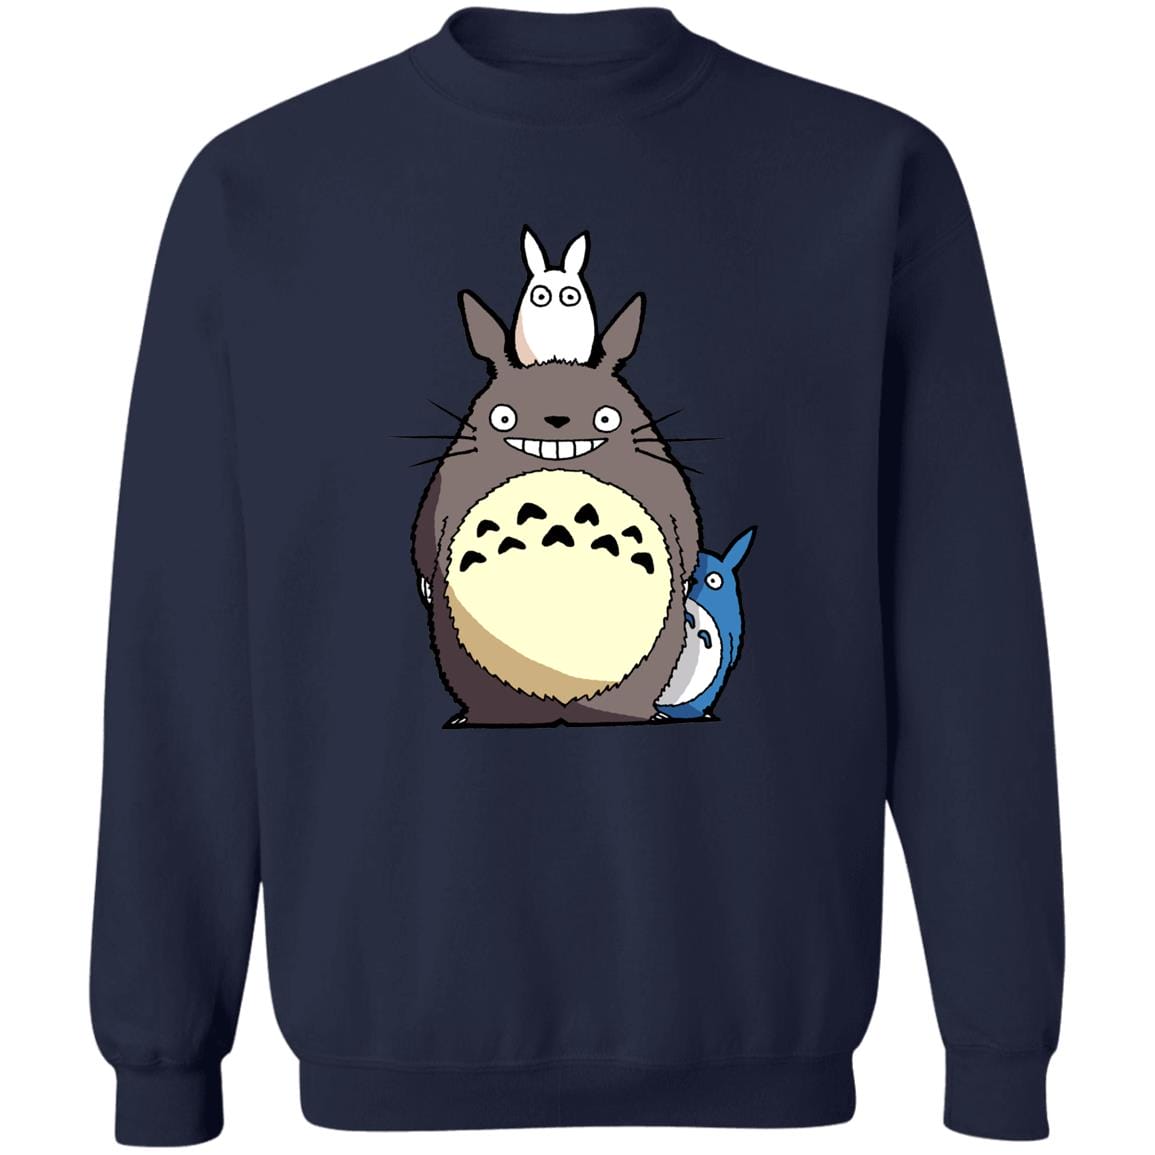 My Neighbor Totoro – Totoro Family Sweatshirt